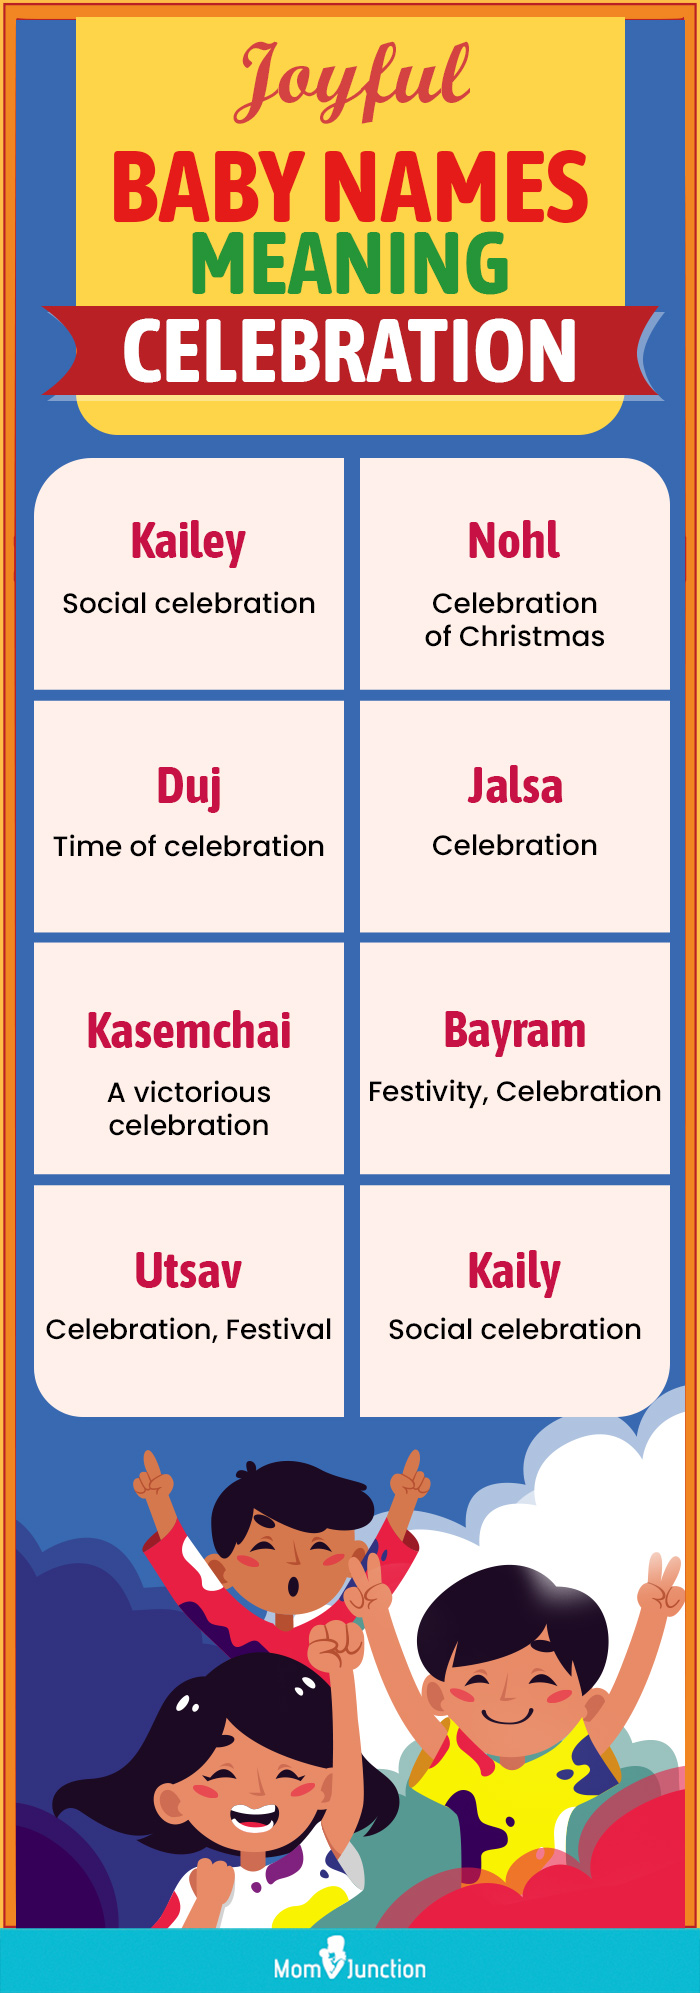 joyful baby names meaning celebration(infographic)